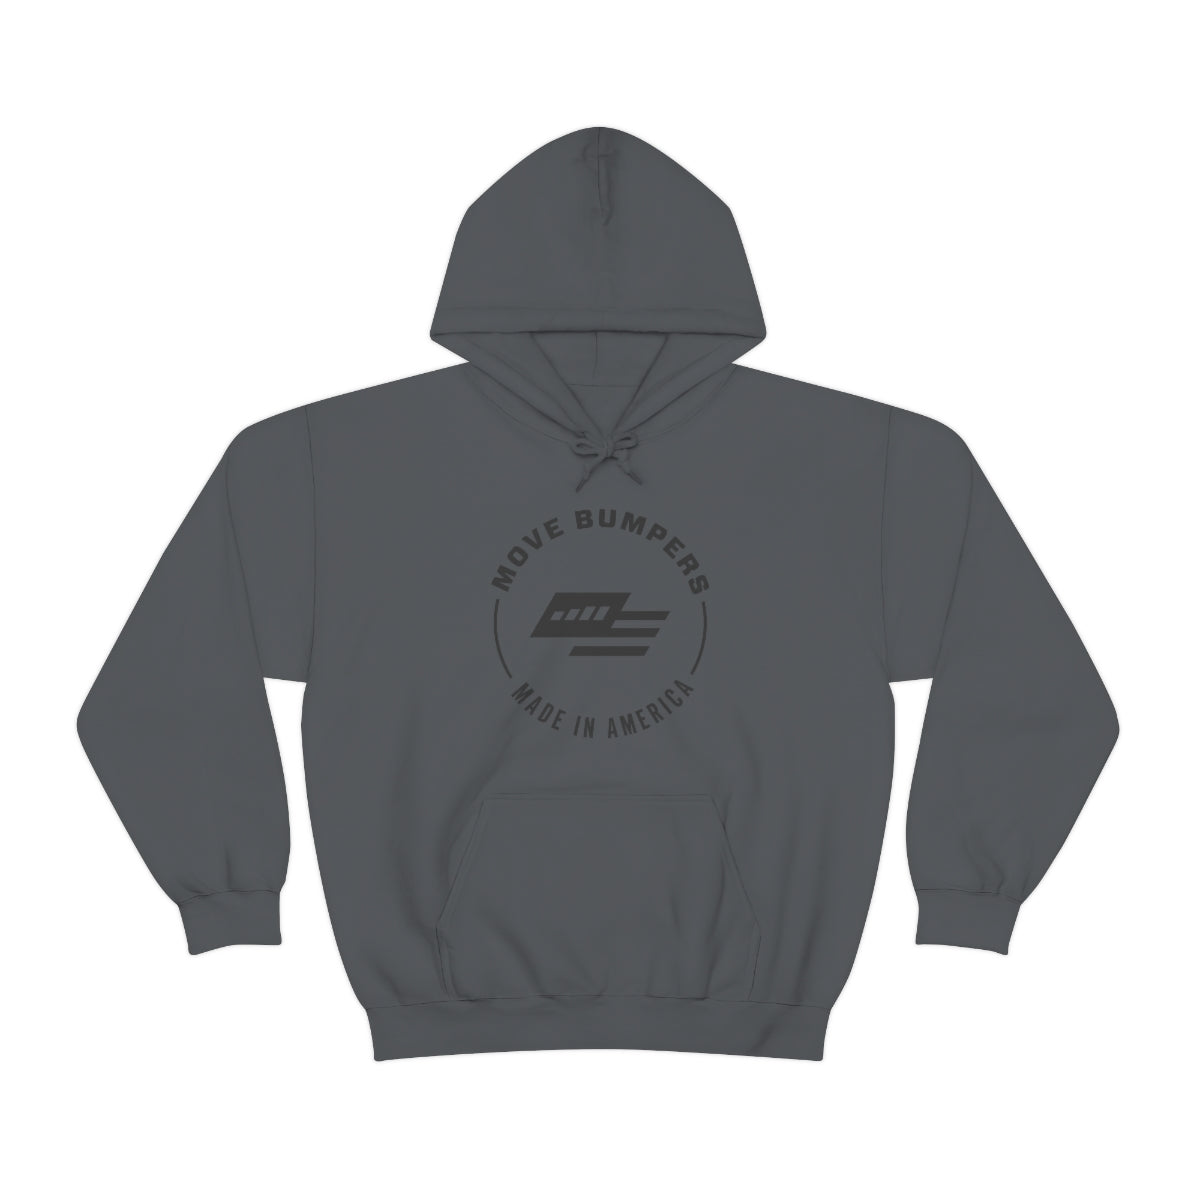 MOVE Bumpers Hooded Sweatshirt - Charcoal